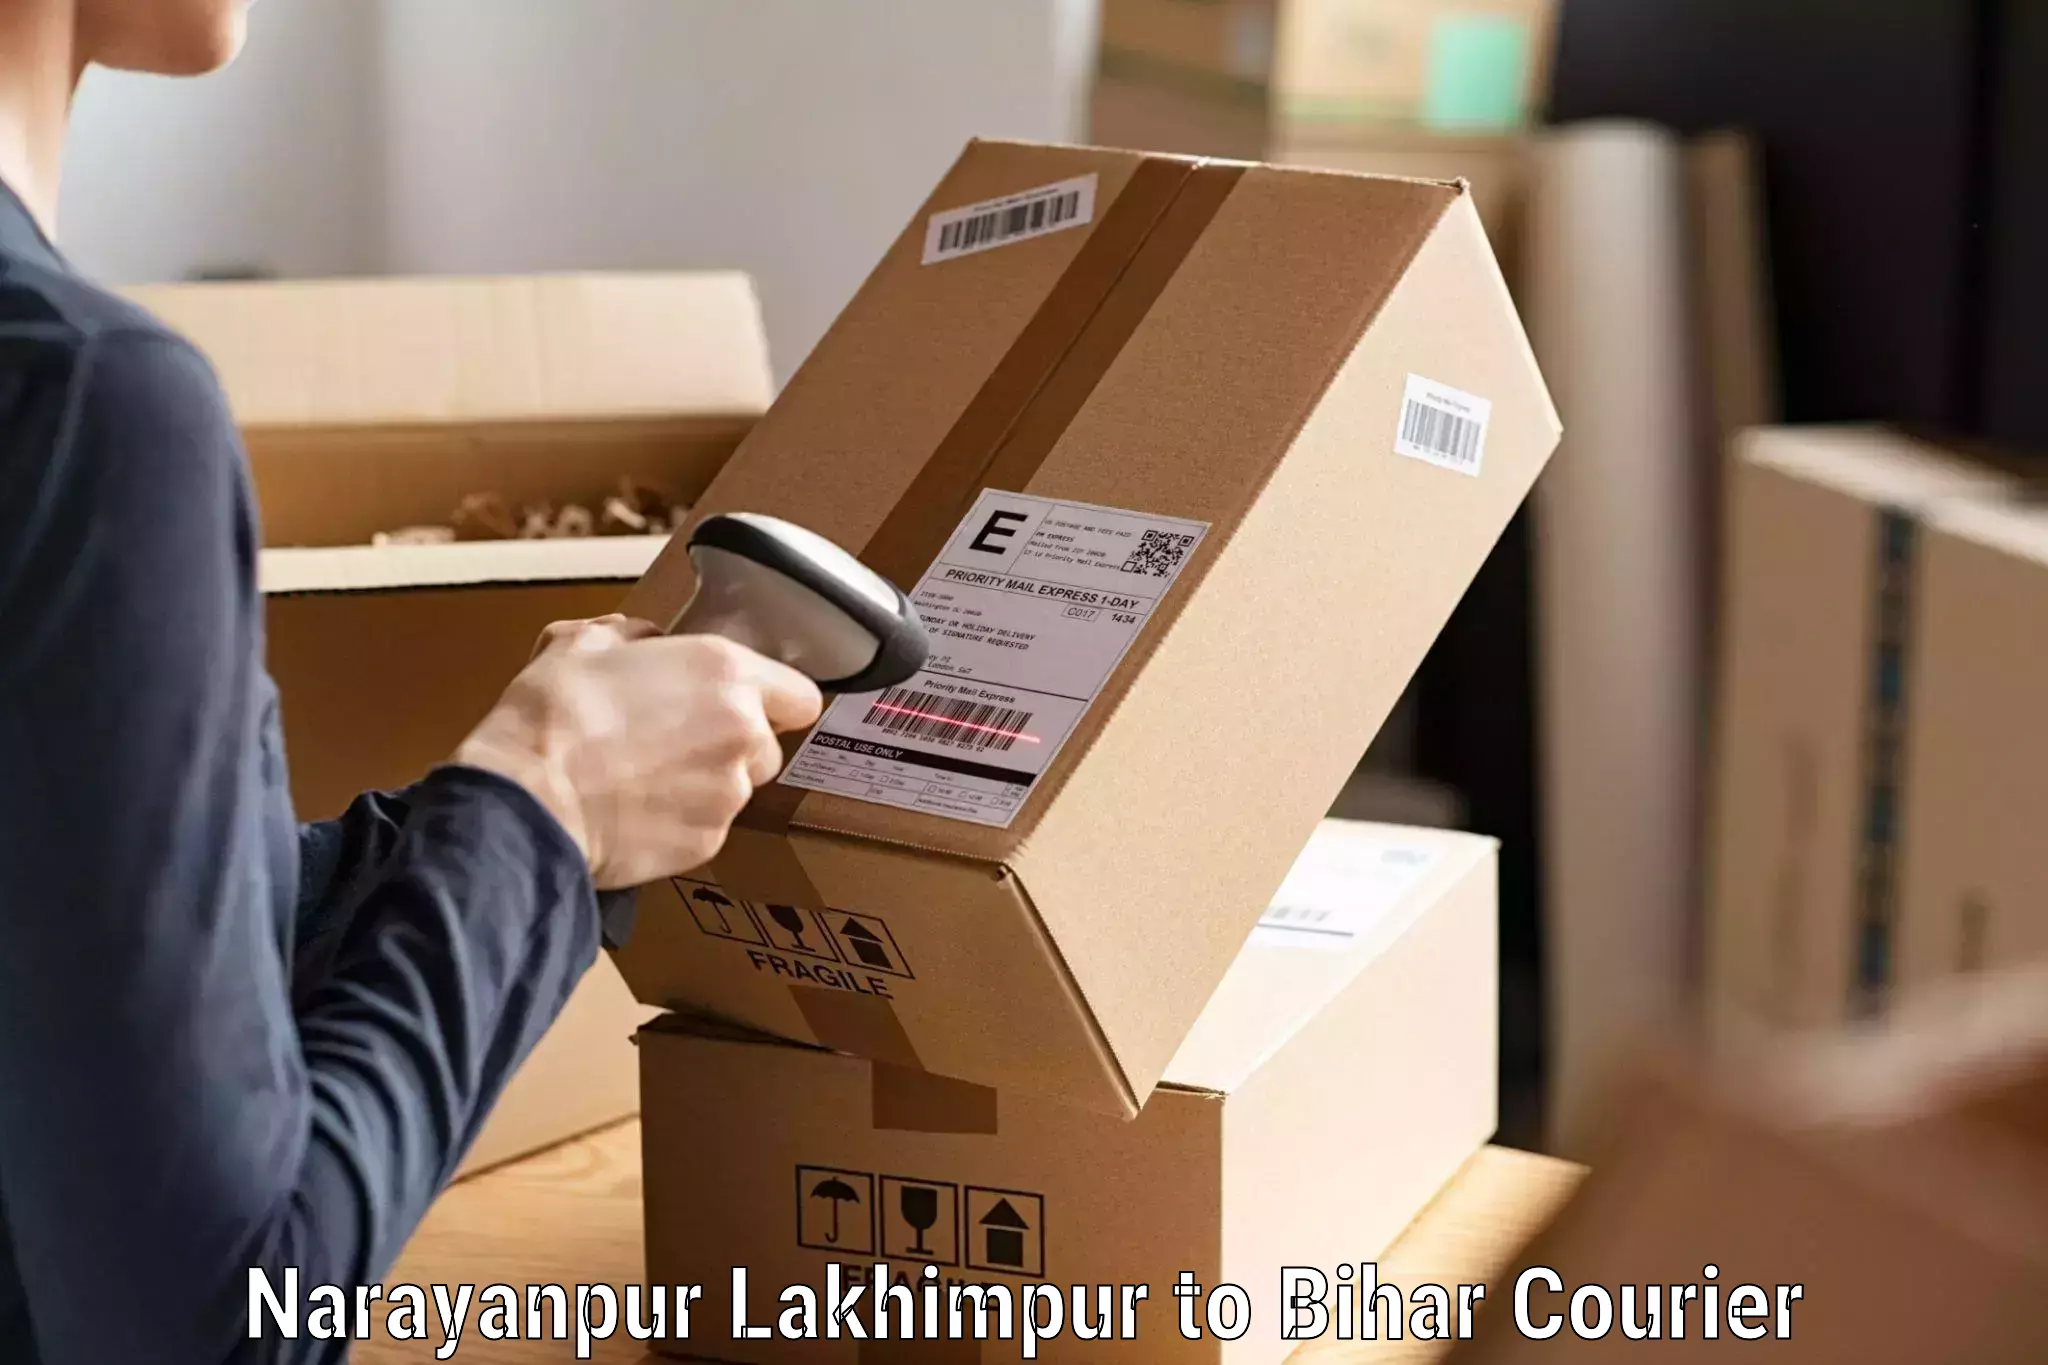 Express courier capabilities Narayanpur Lakhimpur to Jiwdhara